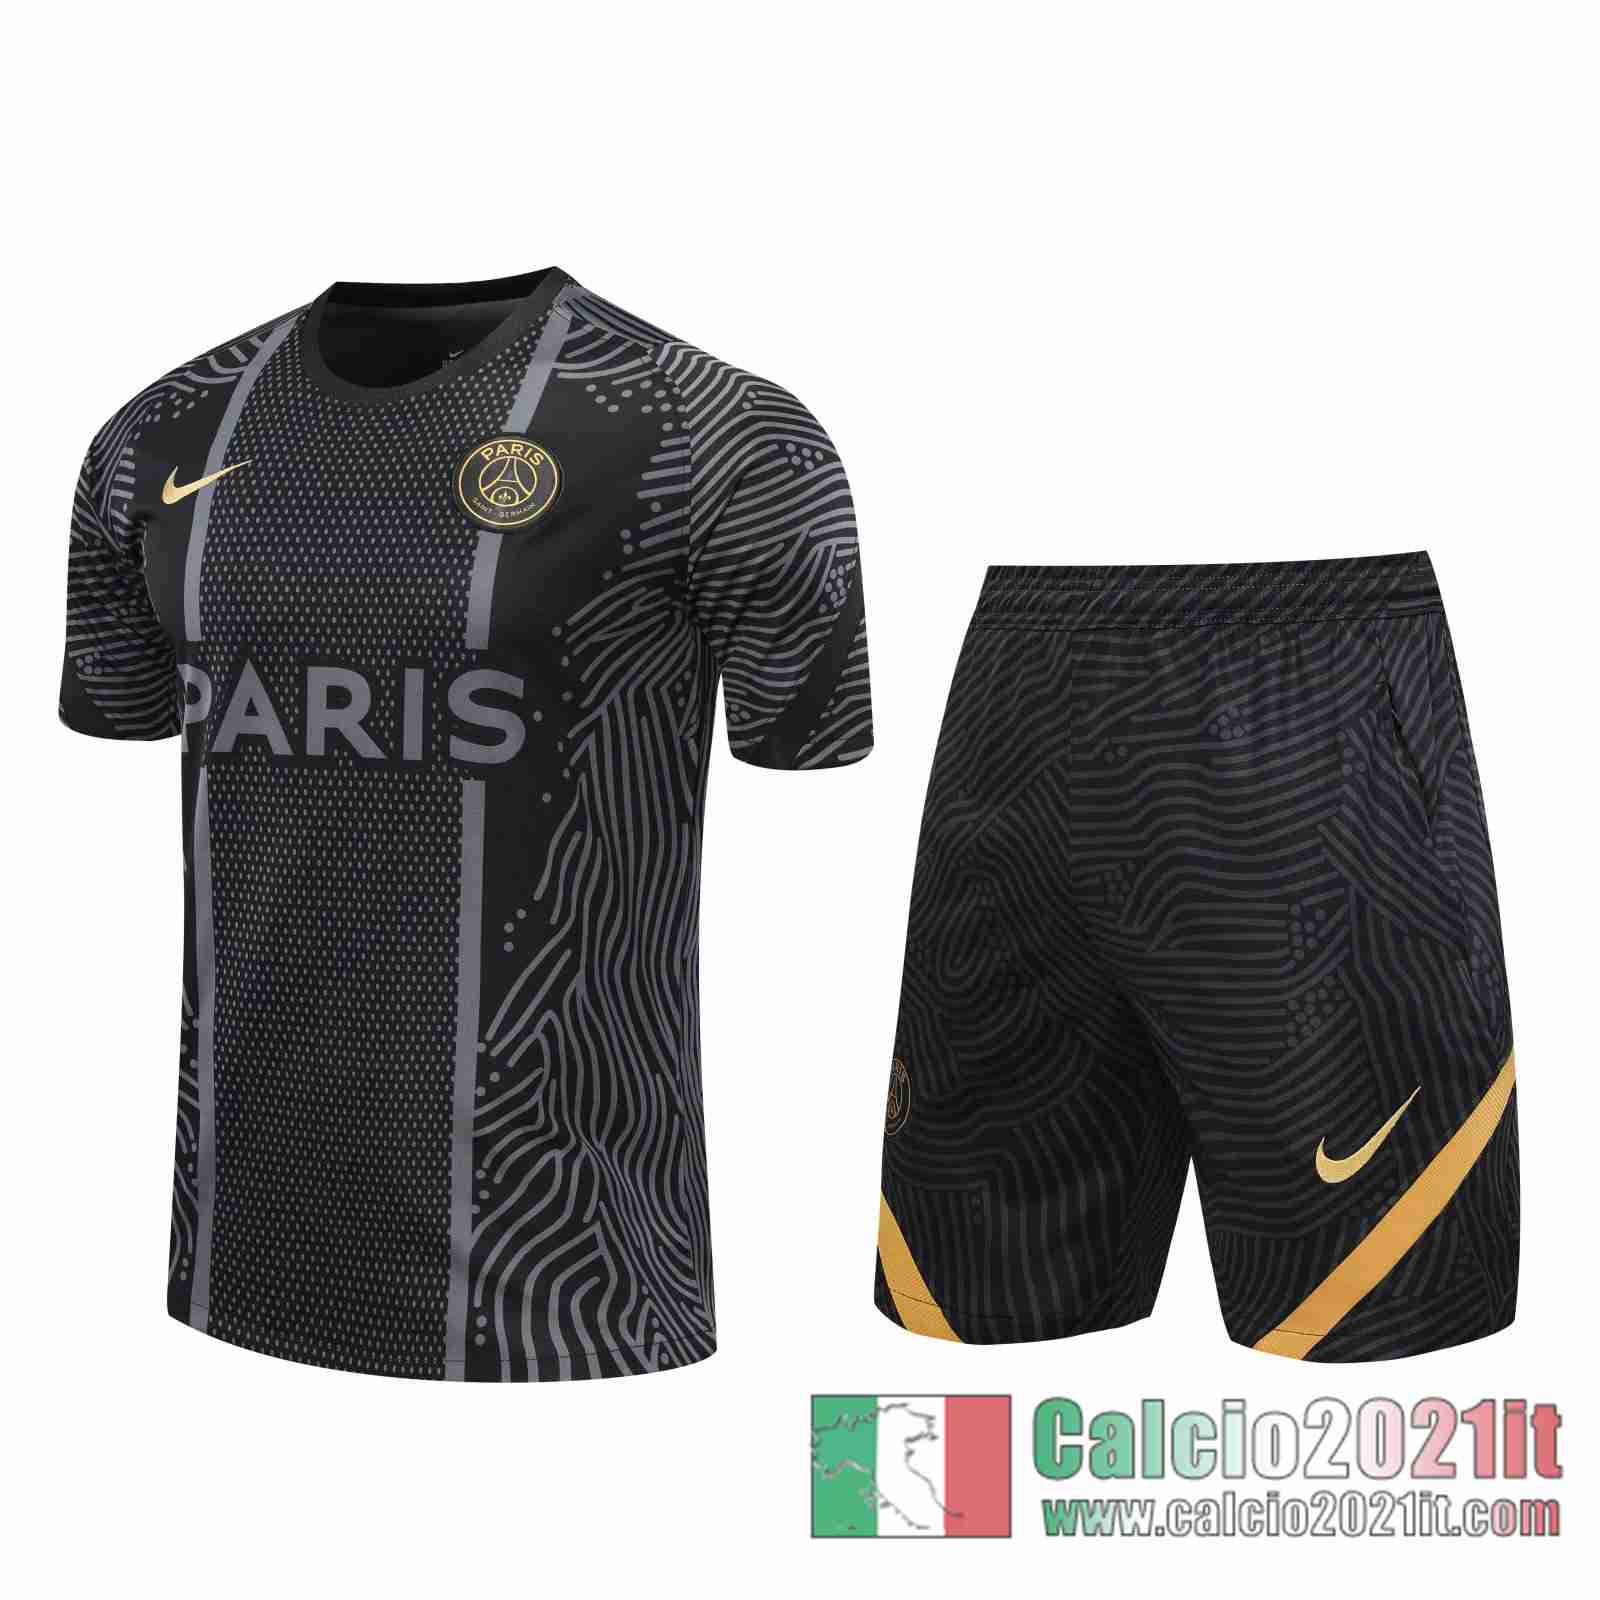 Paris Magliette Tuta Calcio nero Modello dell'acqua 2020 2021 T75